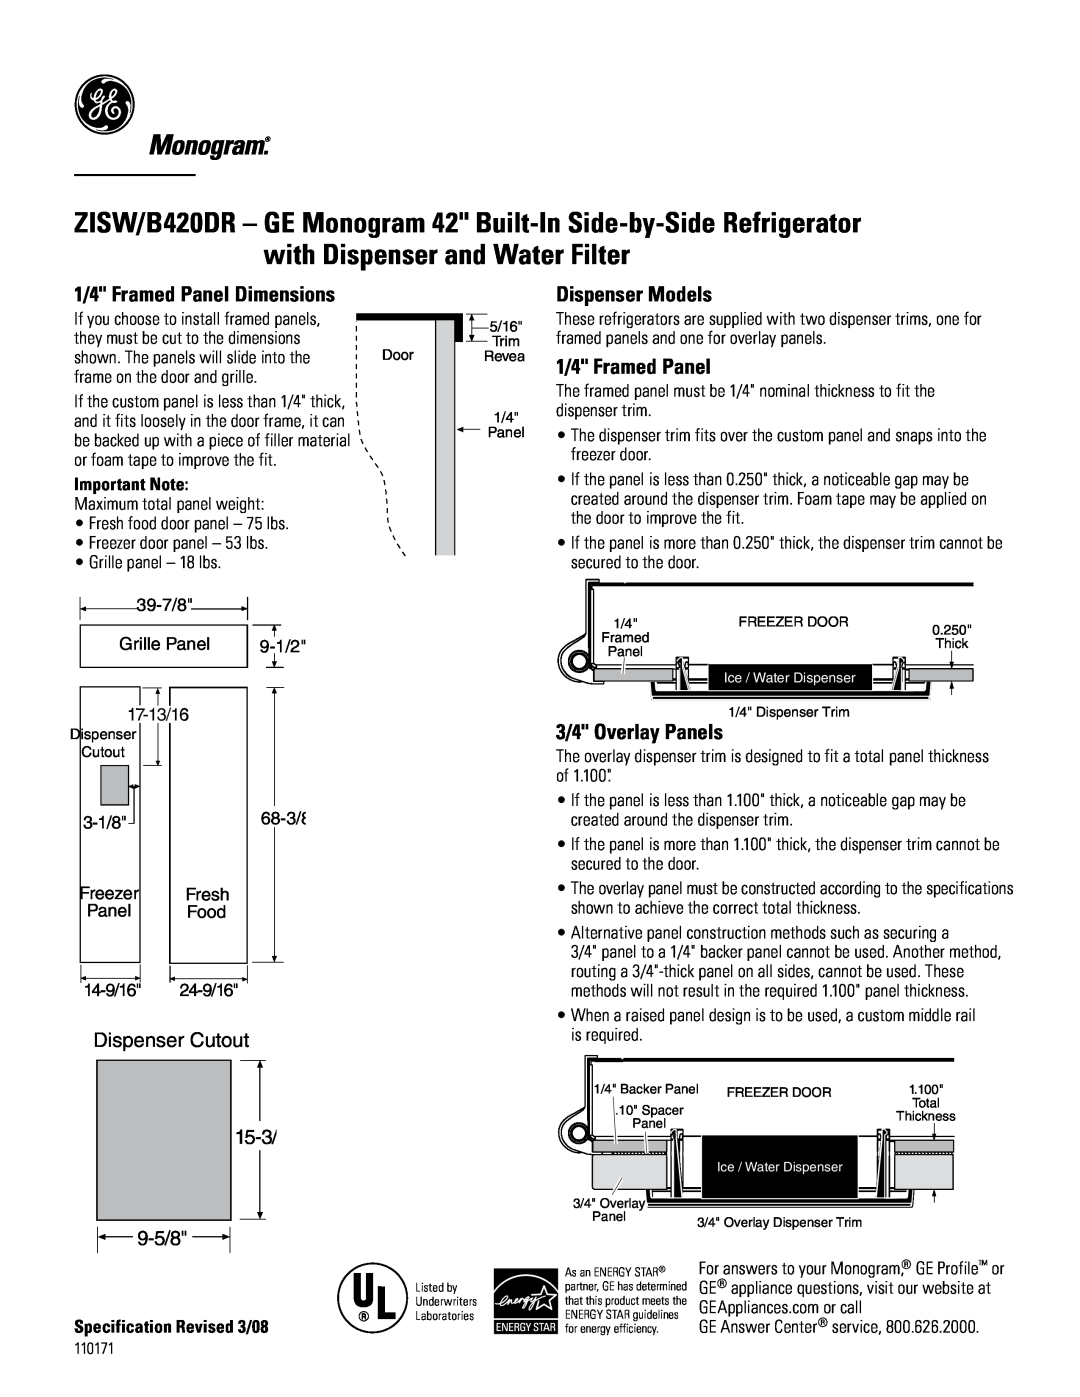 GE Monogram B420DR 1/4 Framed Panel Dimensions, Dispenser Models, 3/4 Overlay Panels, Dispenser Cutout, 15-3 9-5/8 